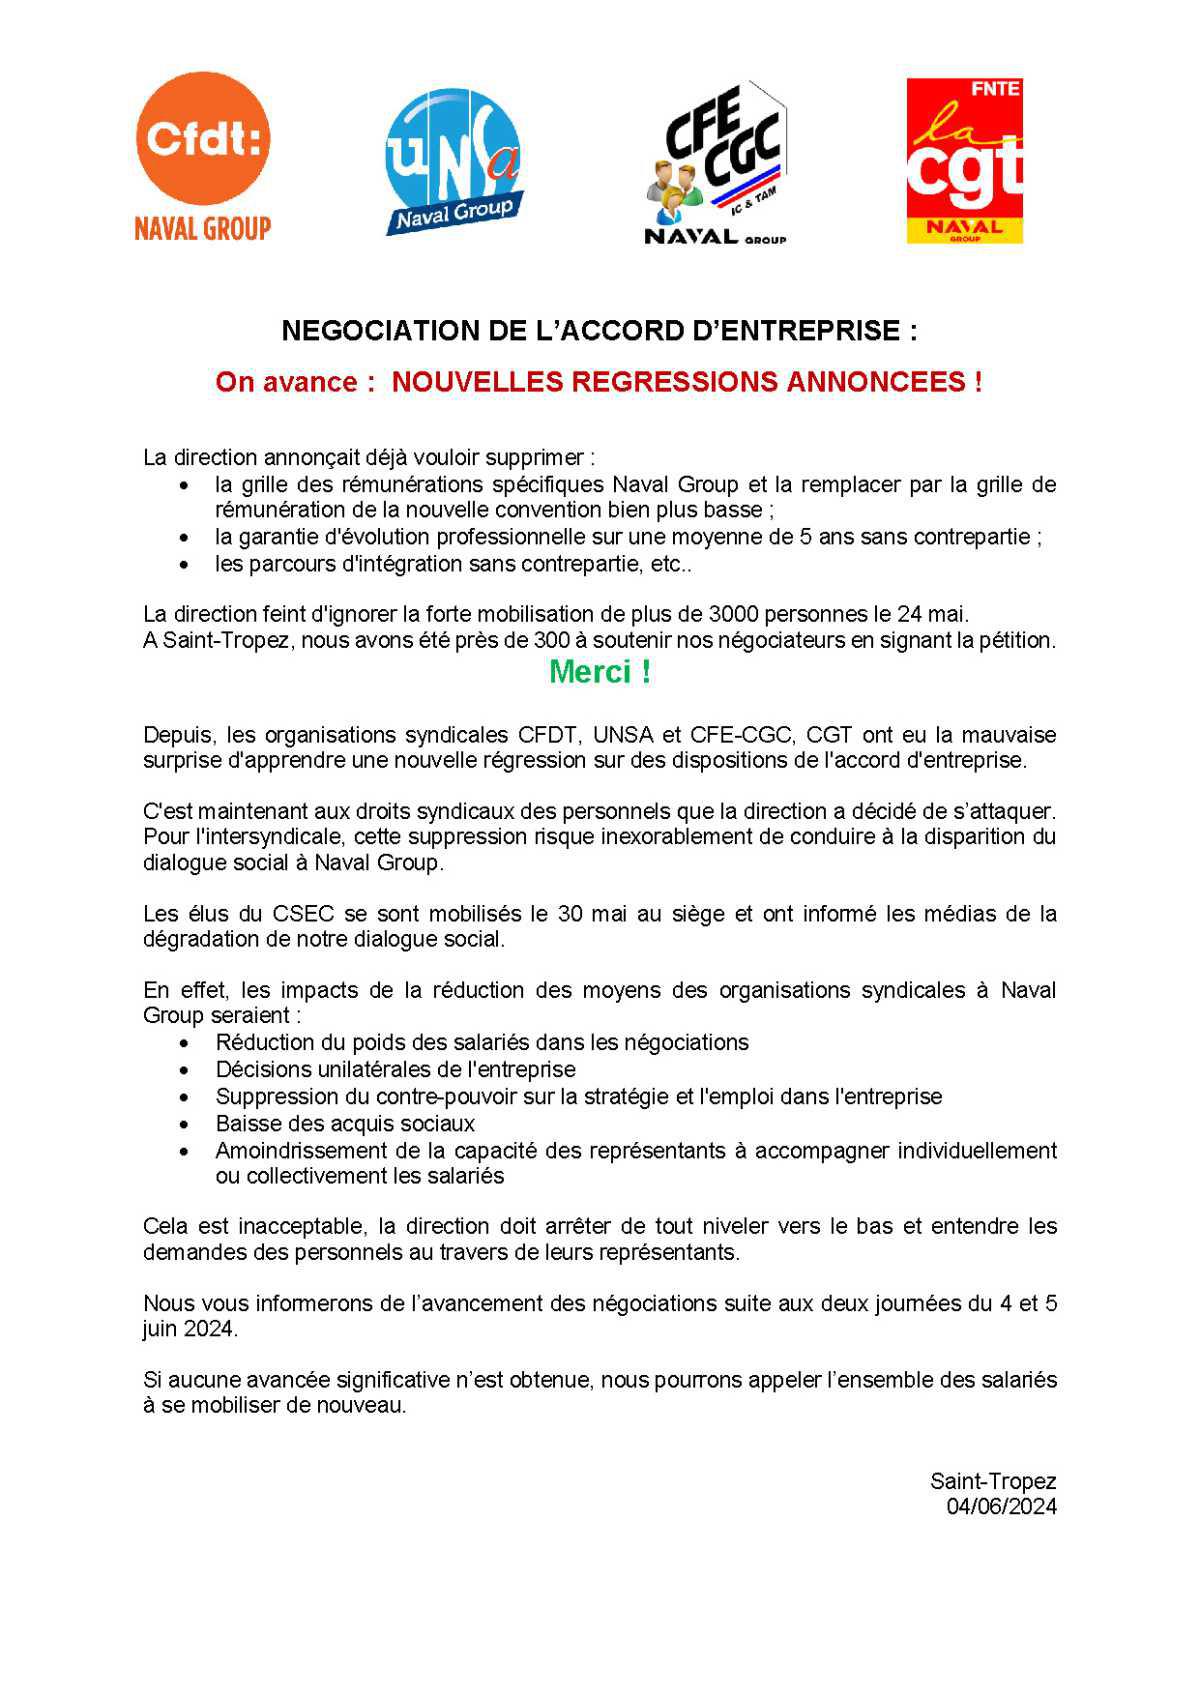 Négociation de l'AE : Saint Tropez, Appel Intersyndical - Mardi 4 juin, tous concernés, tous mobilisés !